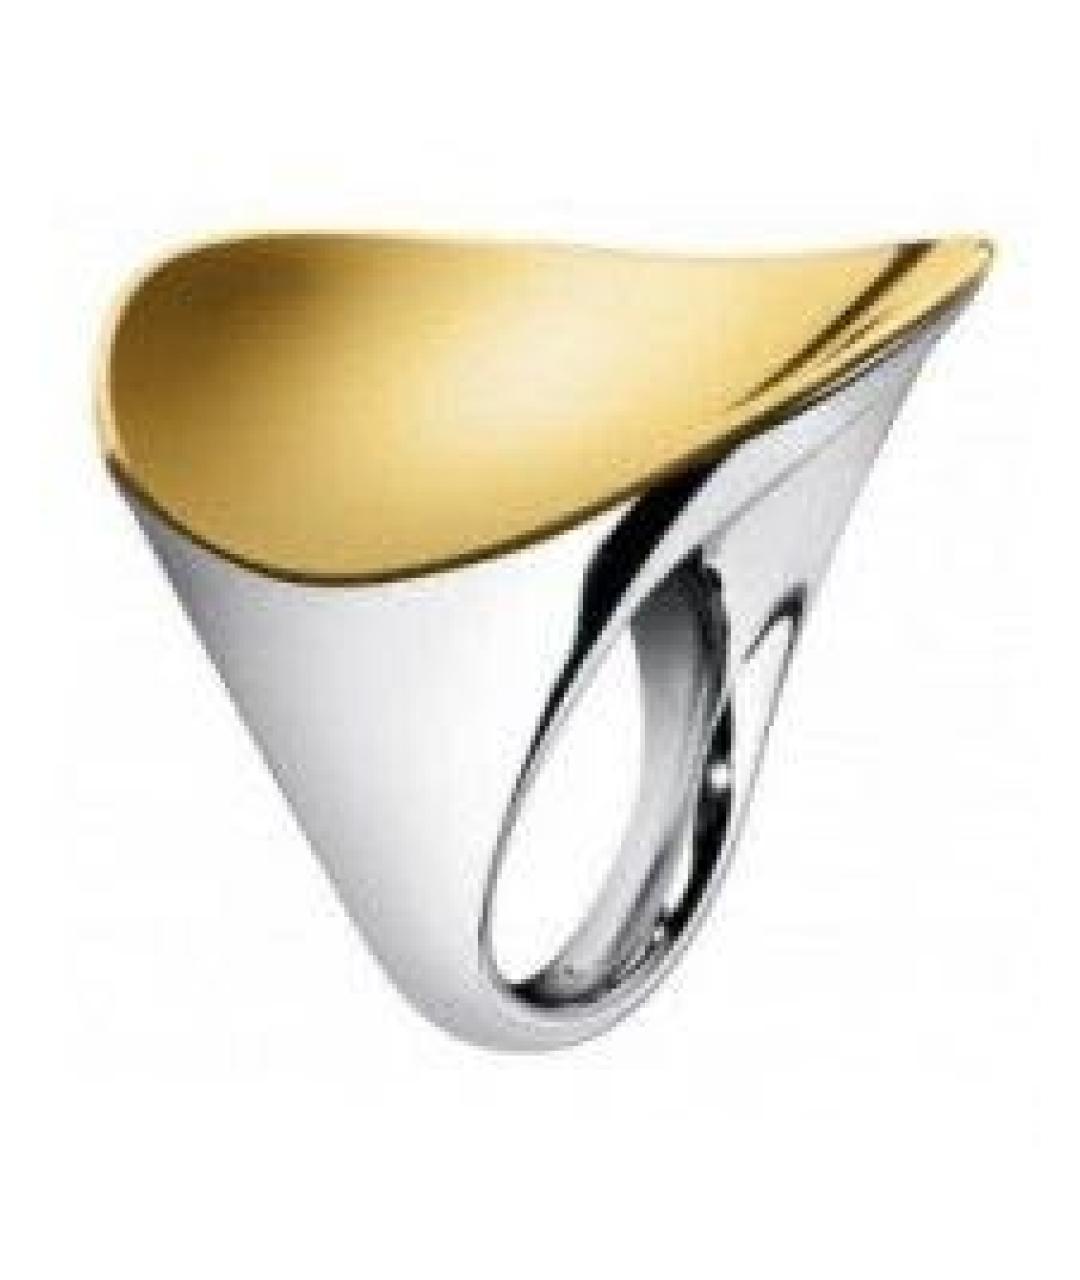 CALVIN KLEIN Серебряное металлическое кольцо, фото 1